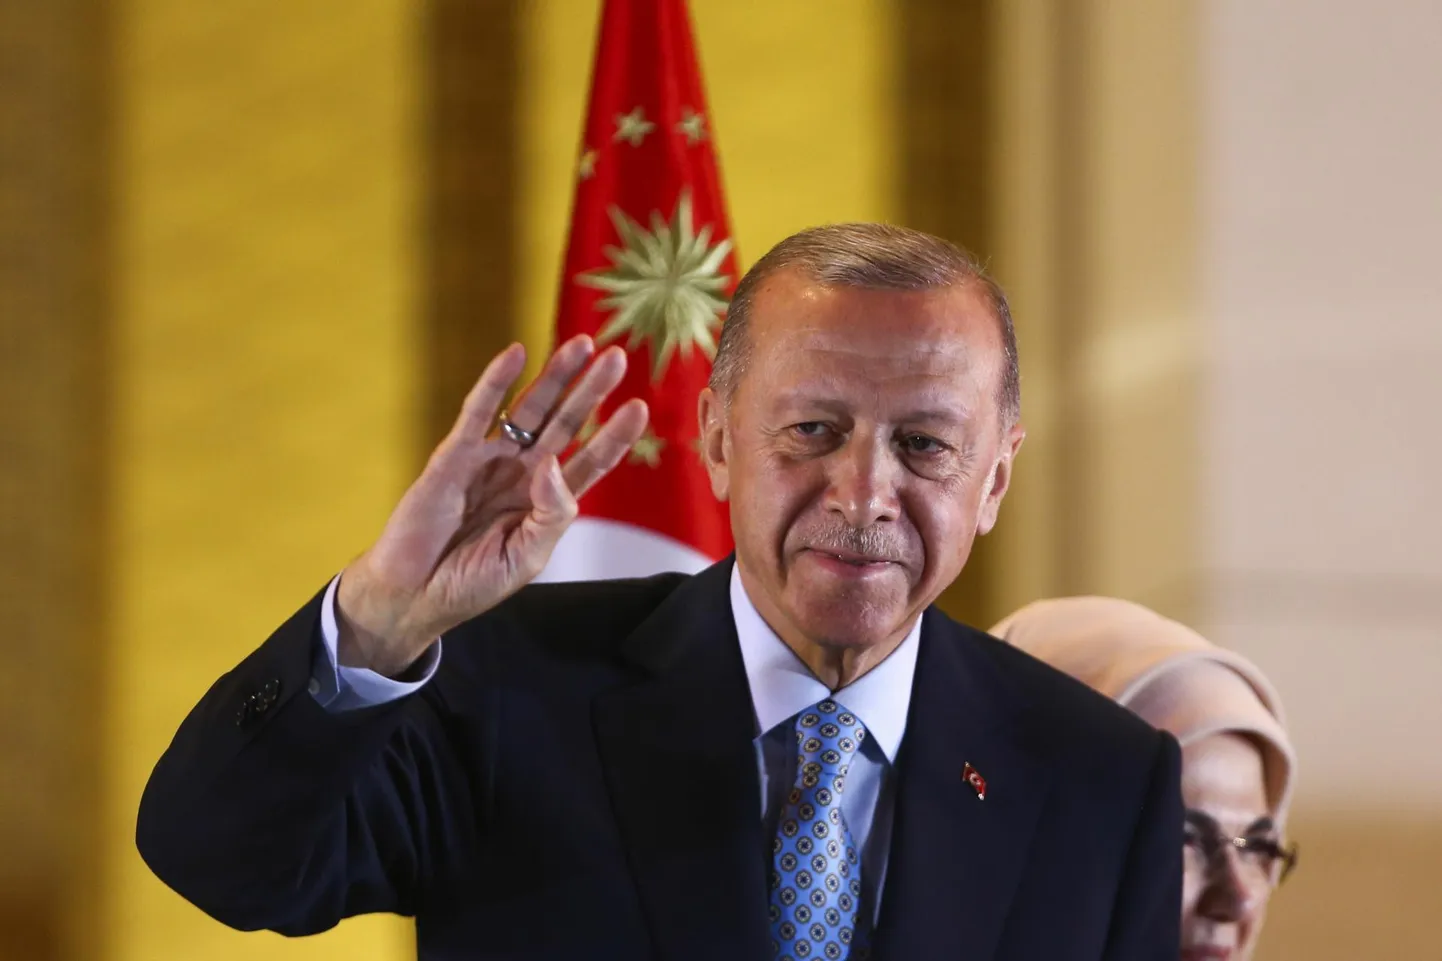 Rootsi NATOsse pääsu võti on Türgi presidendi Recep Tayyip Erdoğani käes ning otsus tehakse ilmselt tema kitsas lähiringis.